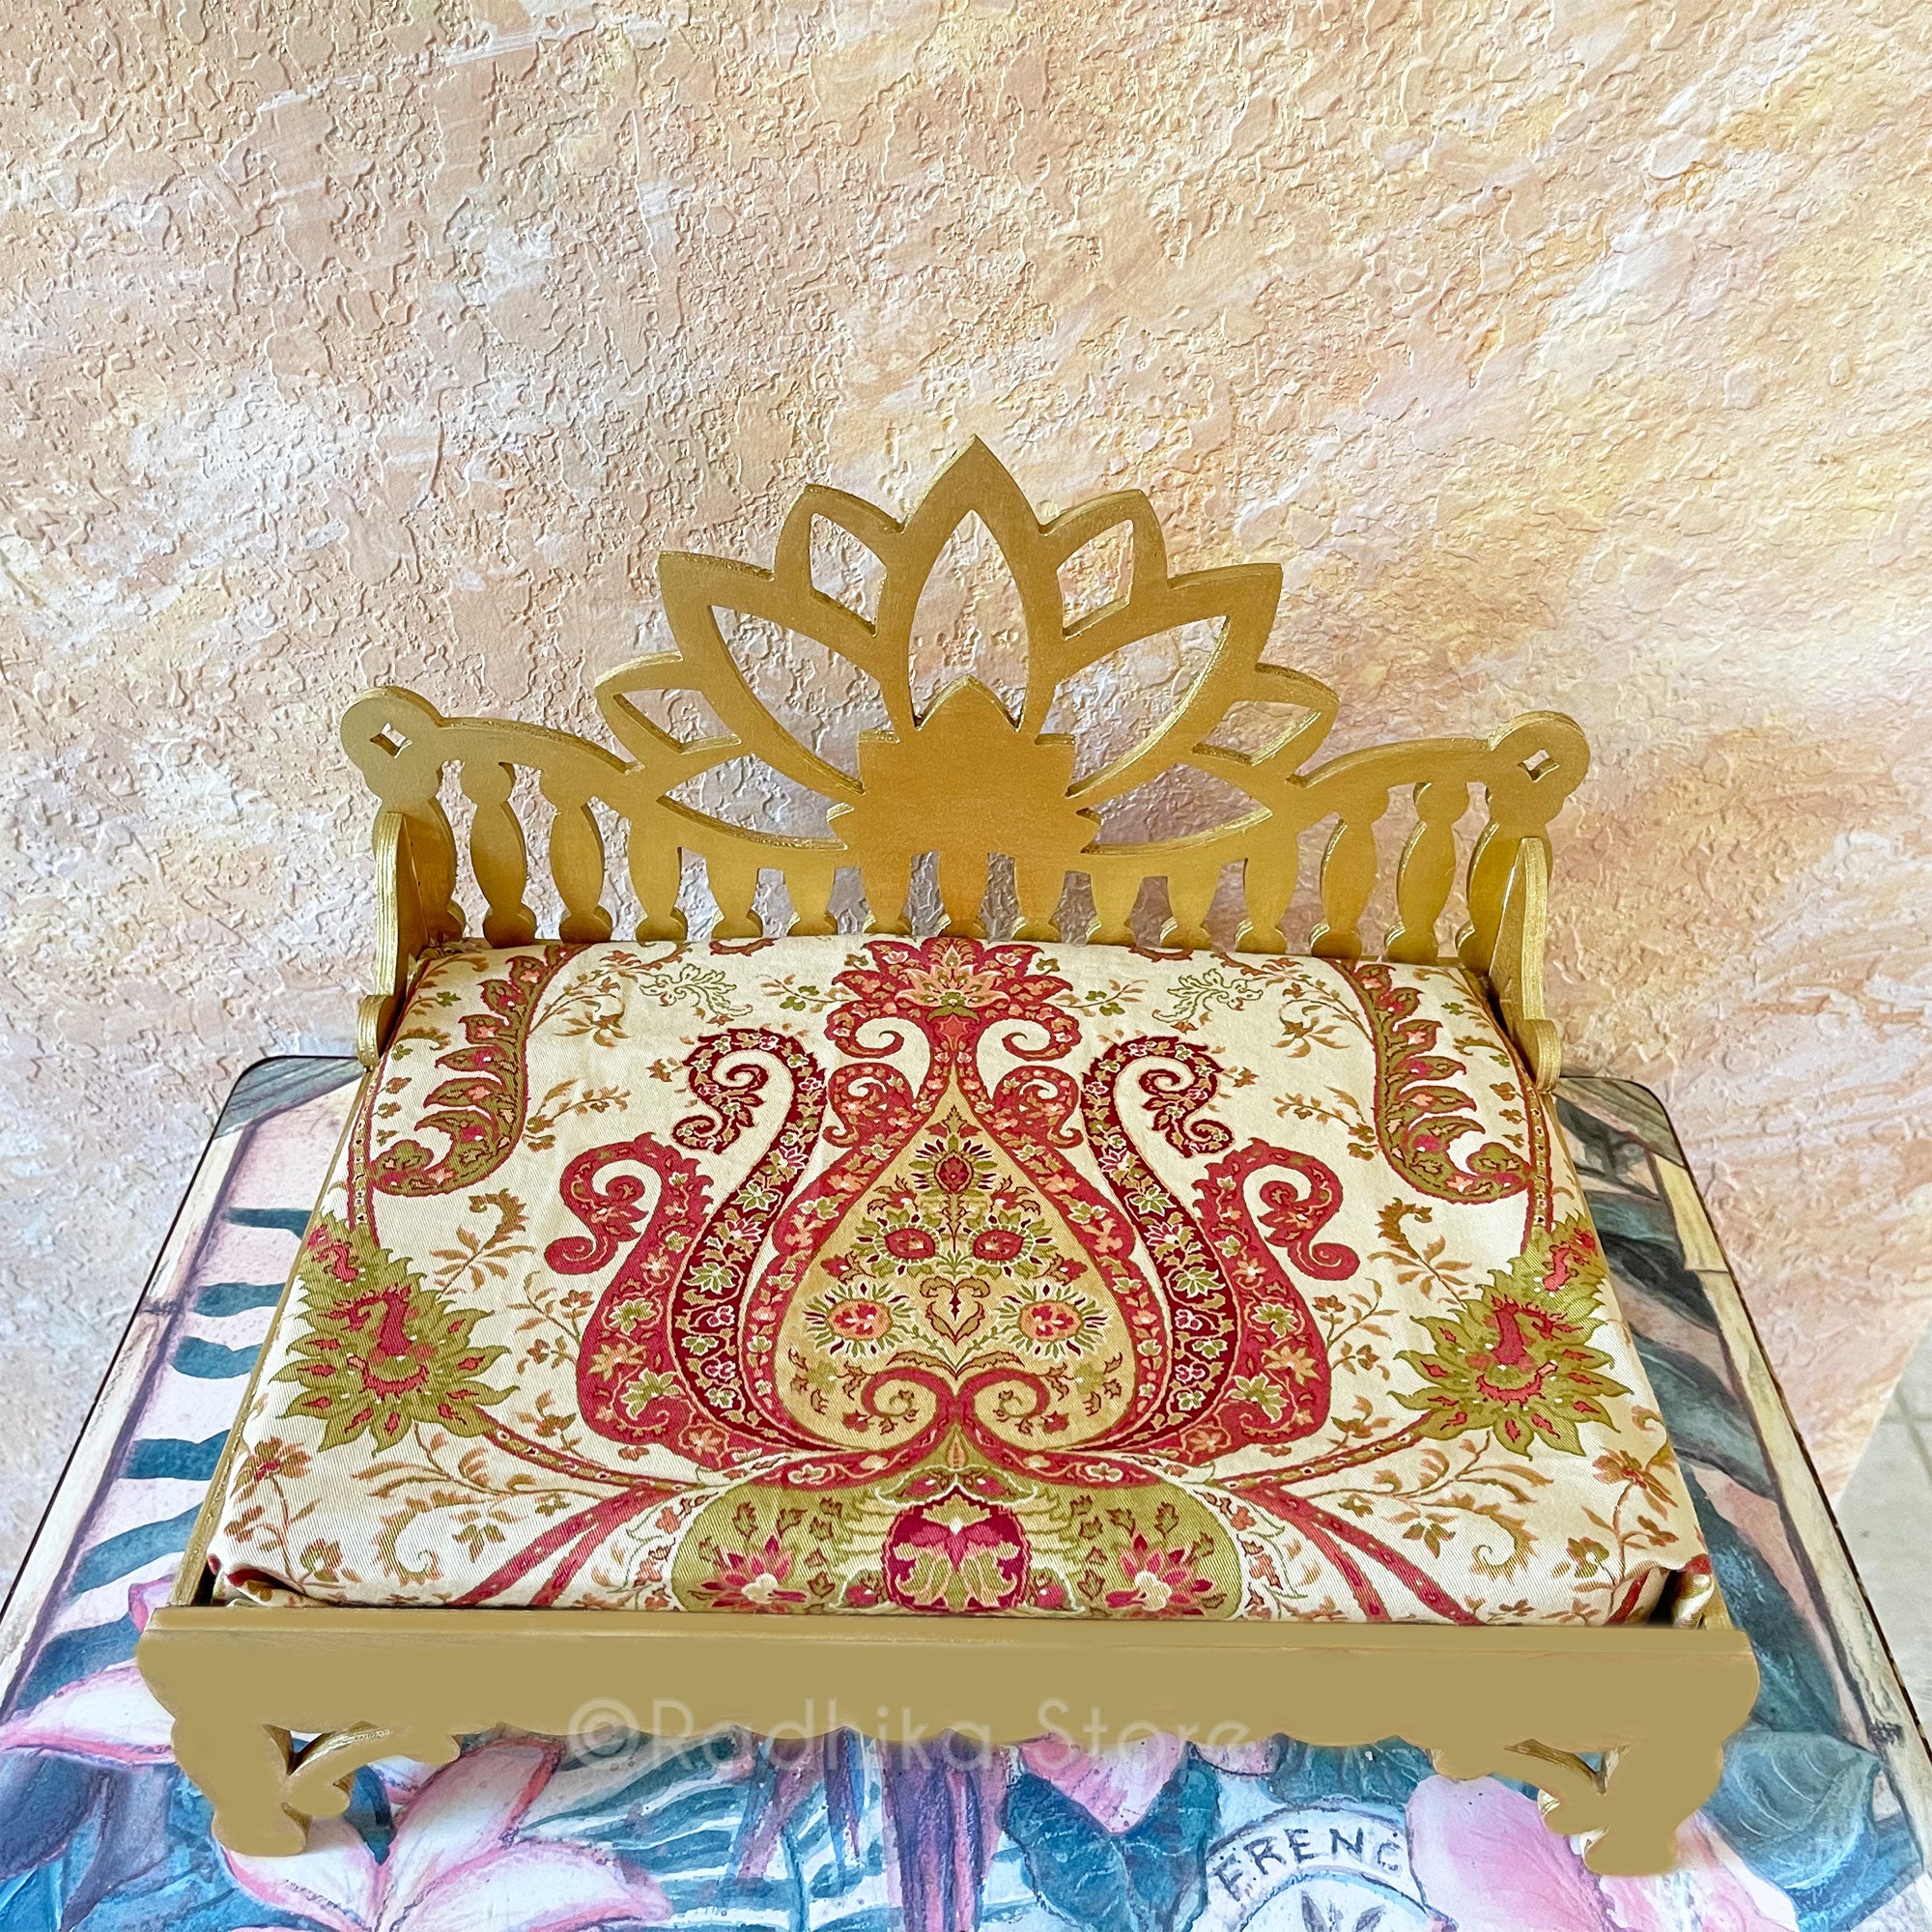 Lotus Flower Jeweled Golden Throne/Bed- Vrindavan Oppulence design- 9.5" Long